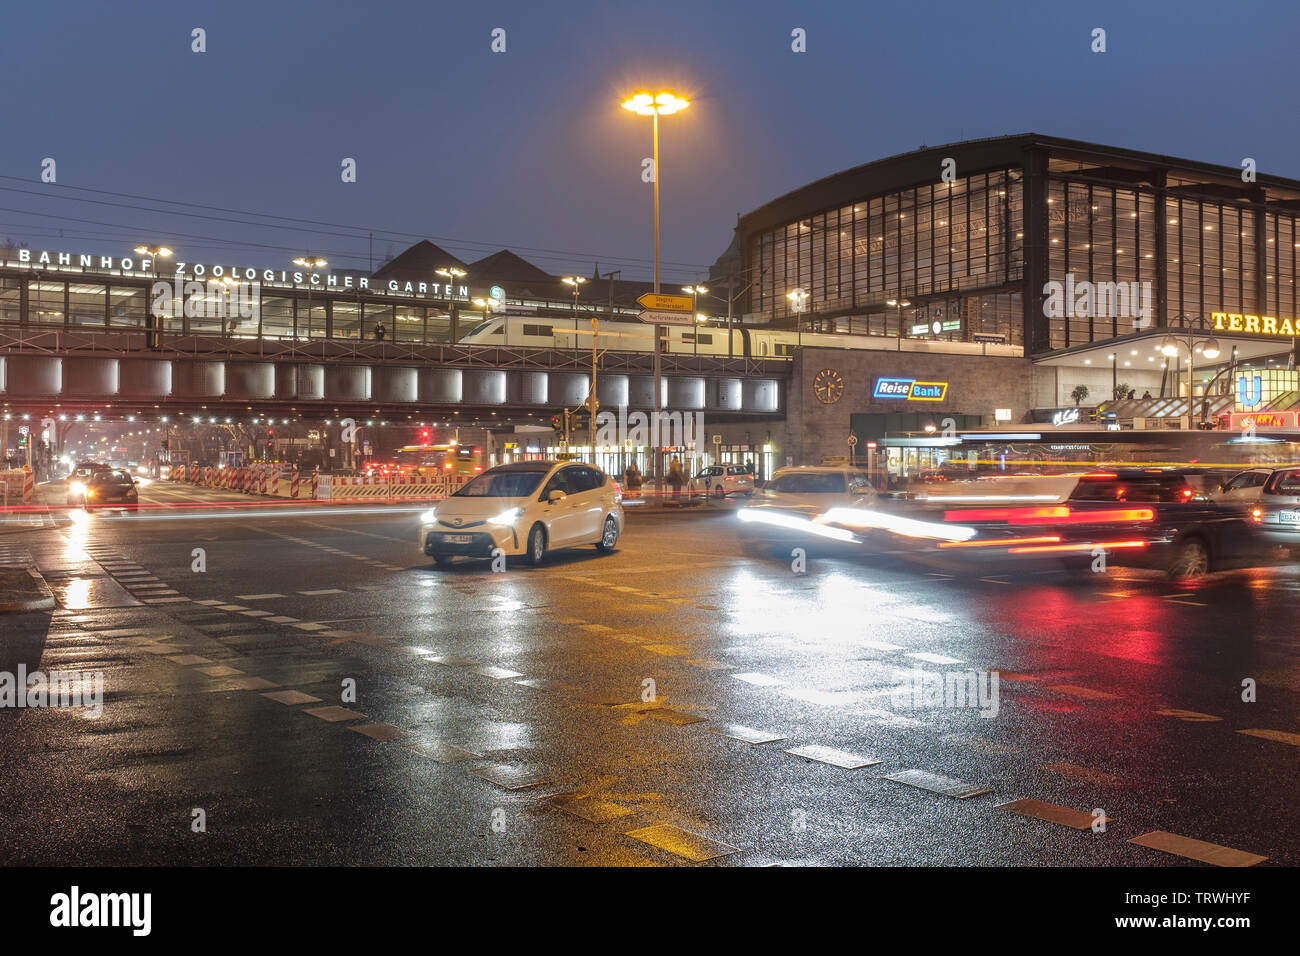 Germania, Berlino, stazione ferroviaria Zoologischer Garten - il traffico sull'Unione dei Joachimsthaler Street e Hardenbergstrasse a notte Foto Stock